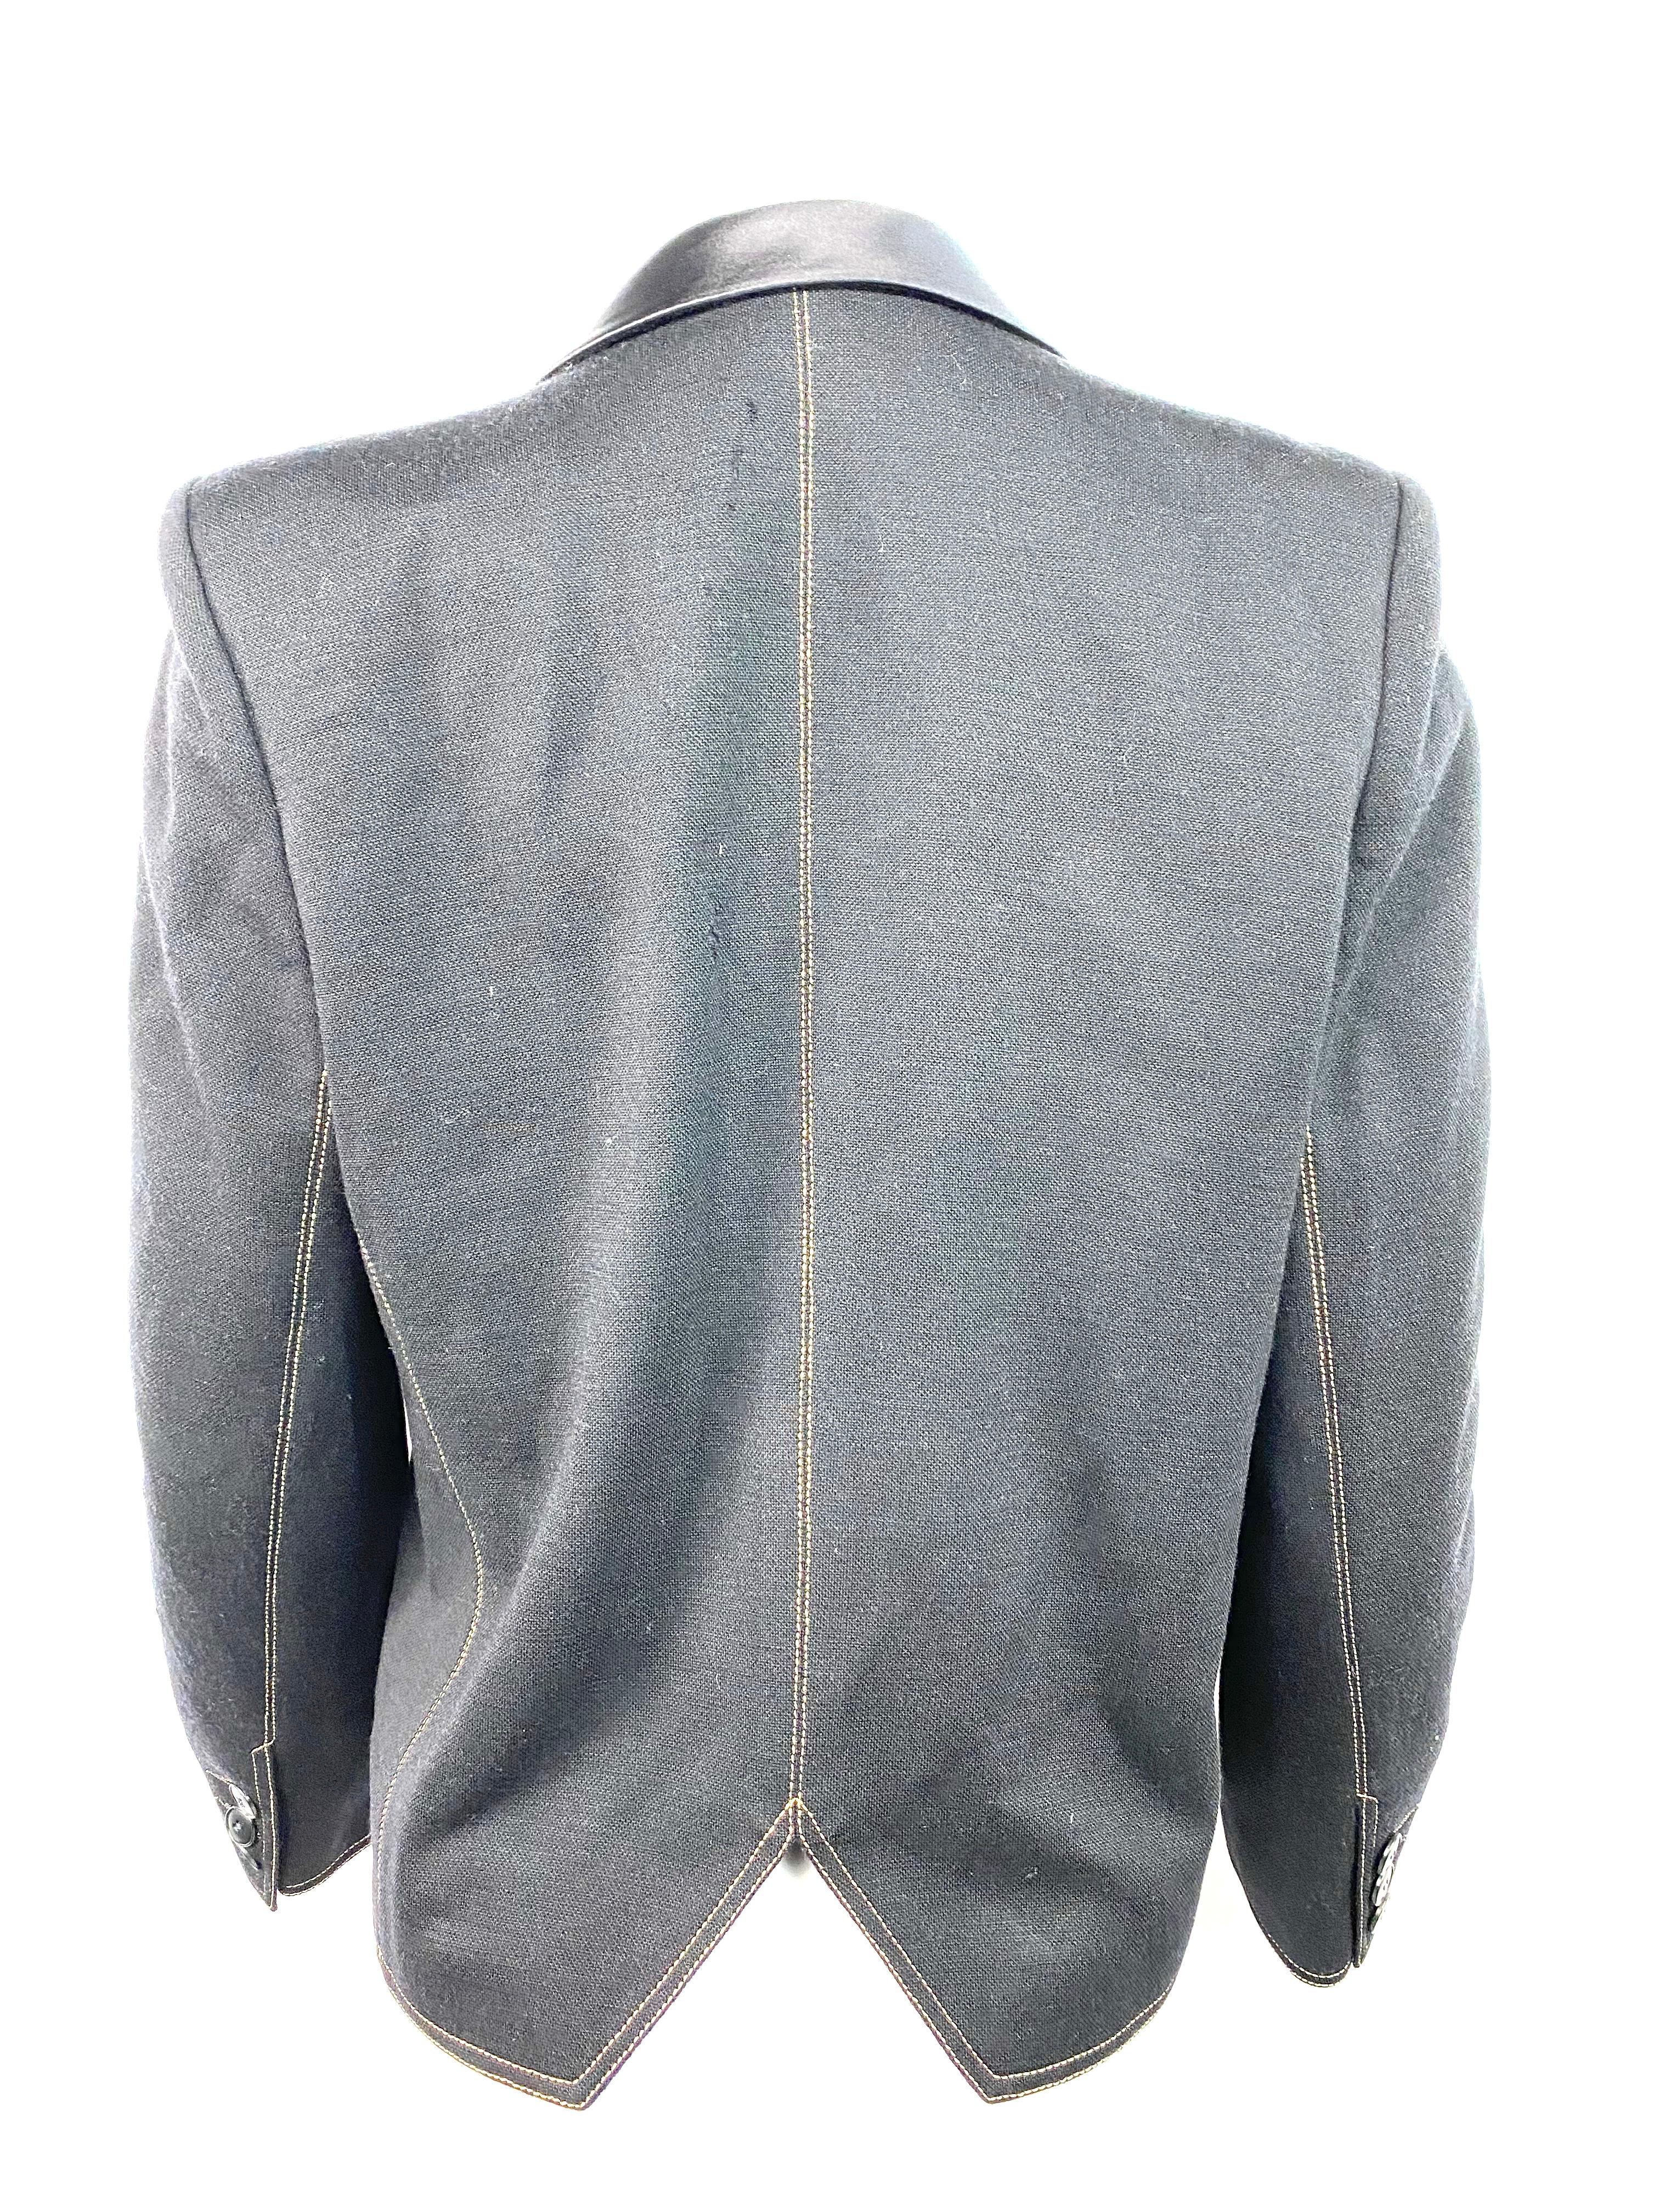 Sonia Rykiel Black Wool Blazer Jacket Size 38 For Sale 1